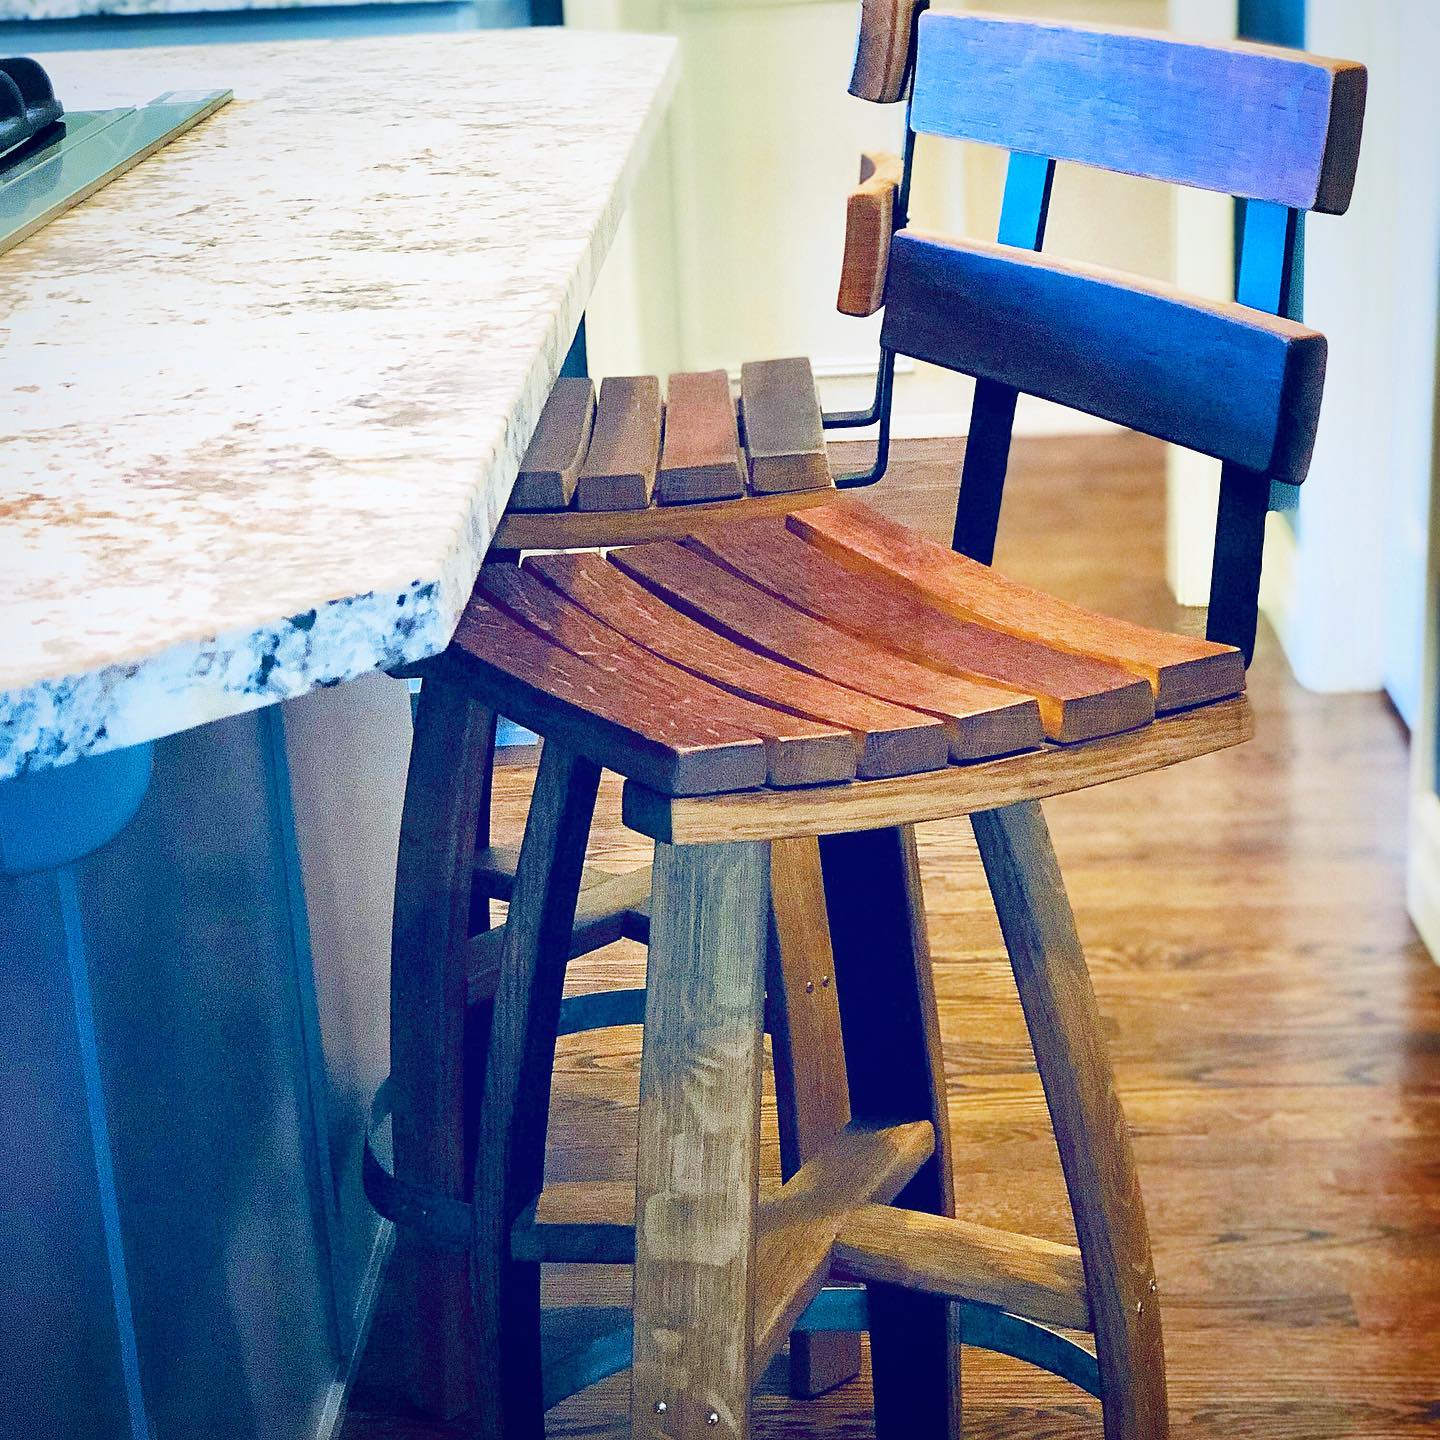 Woodinville Barrel Works - wine barrel furniture - bar stools